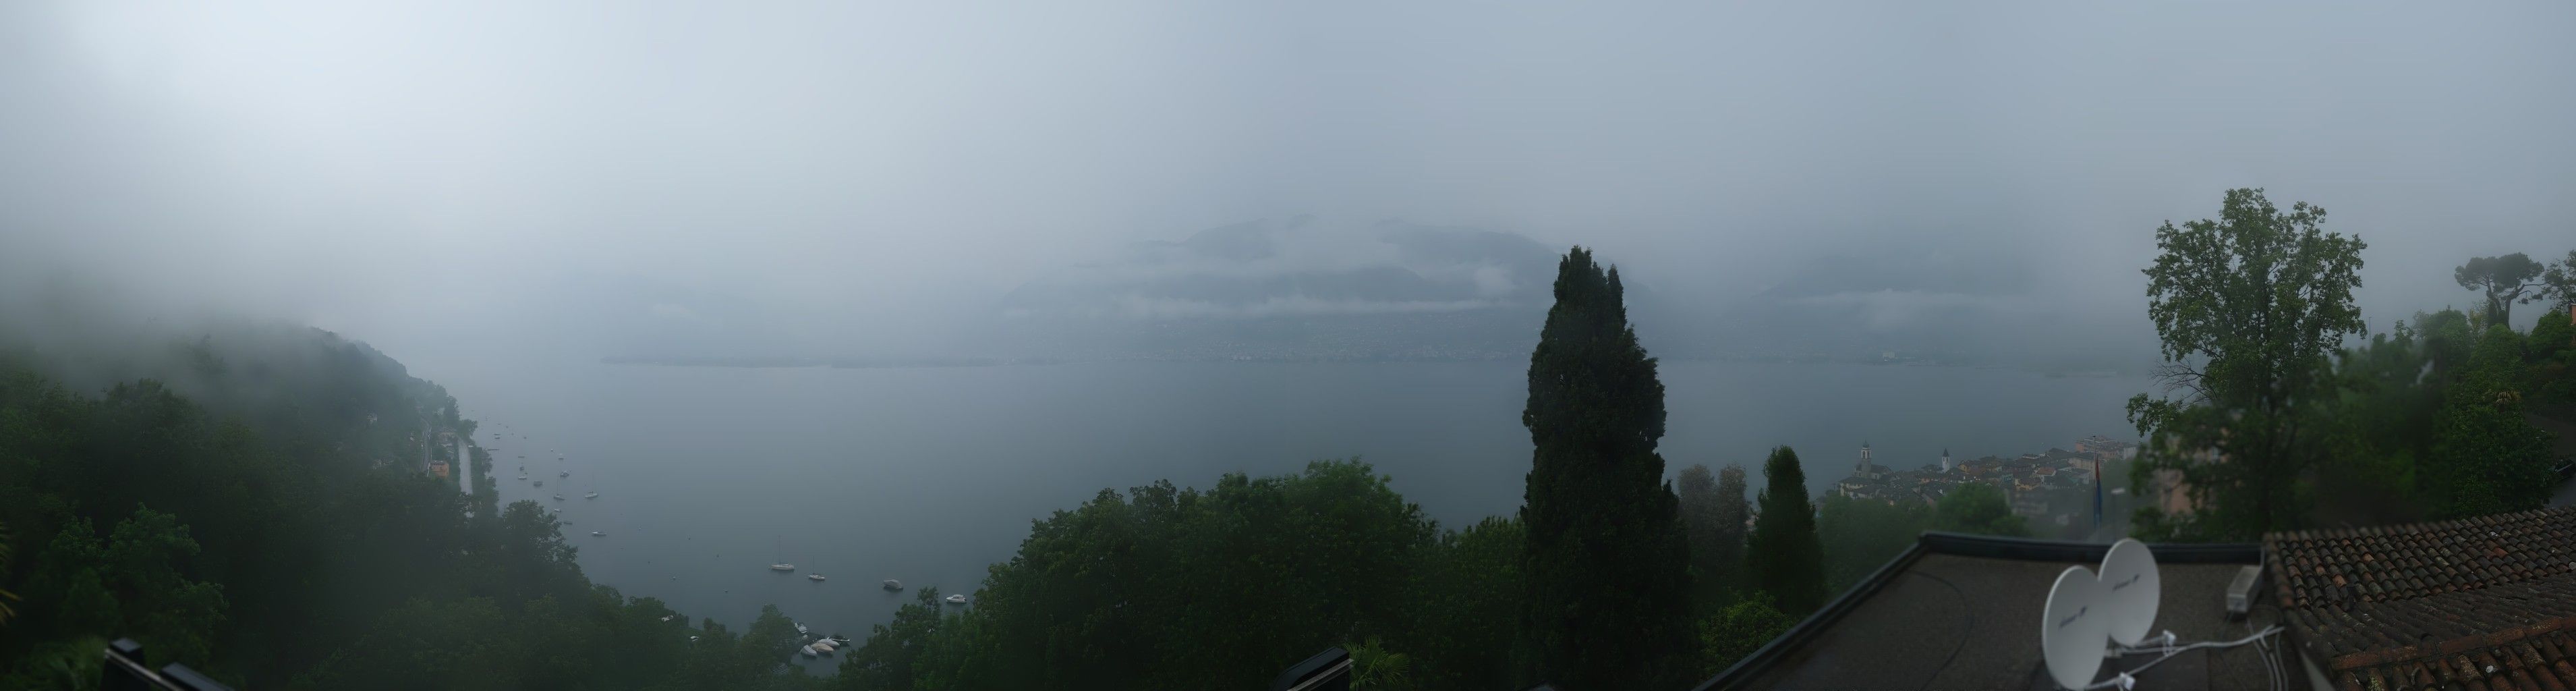 Gambarogno: Lago Maggiore